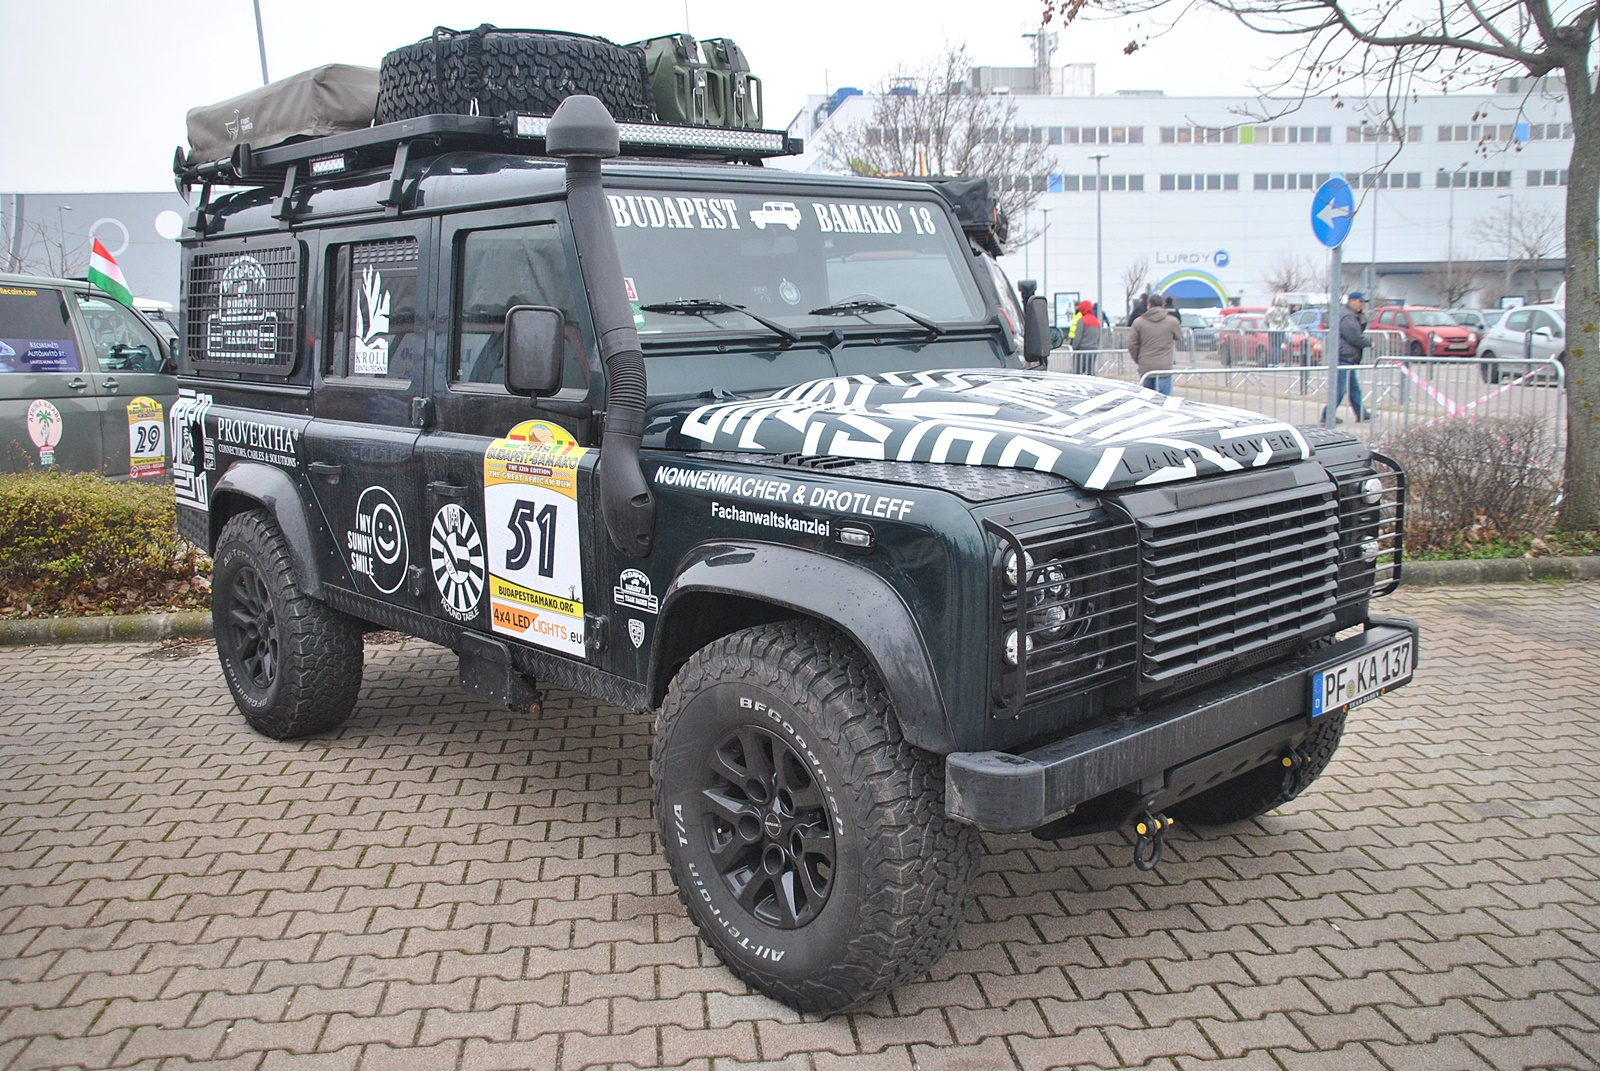 51 - Land Rover